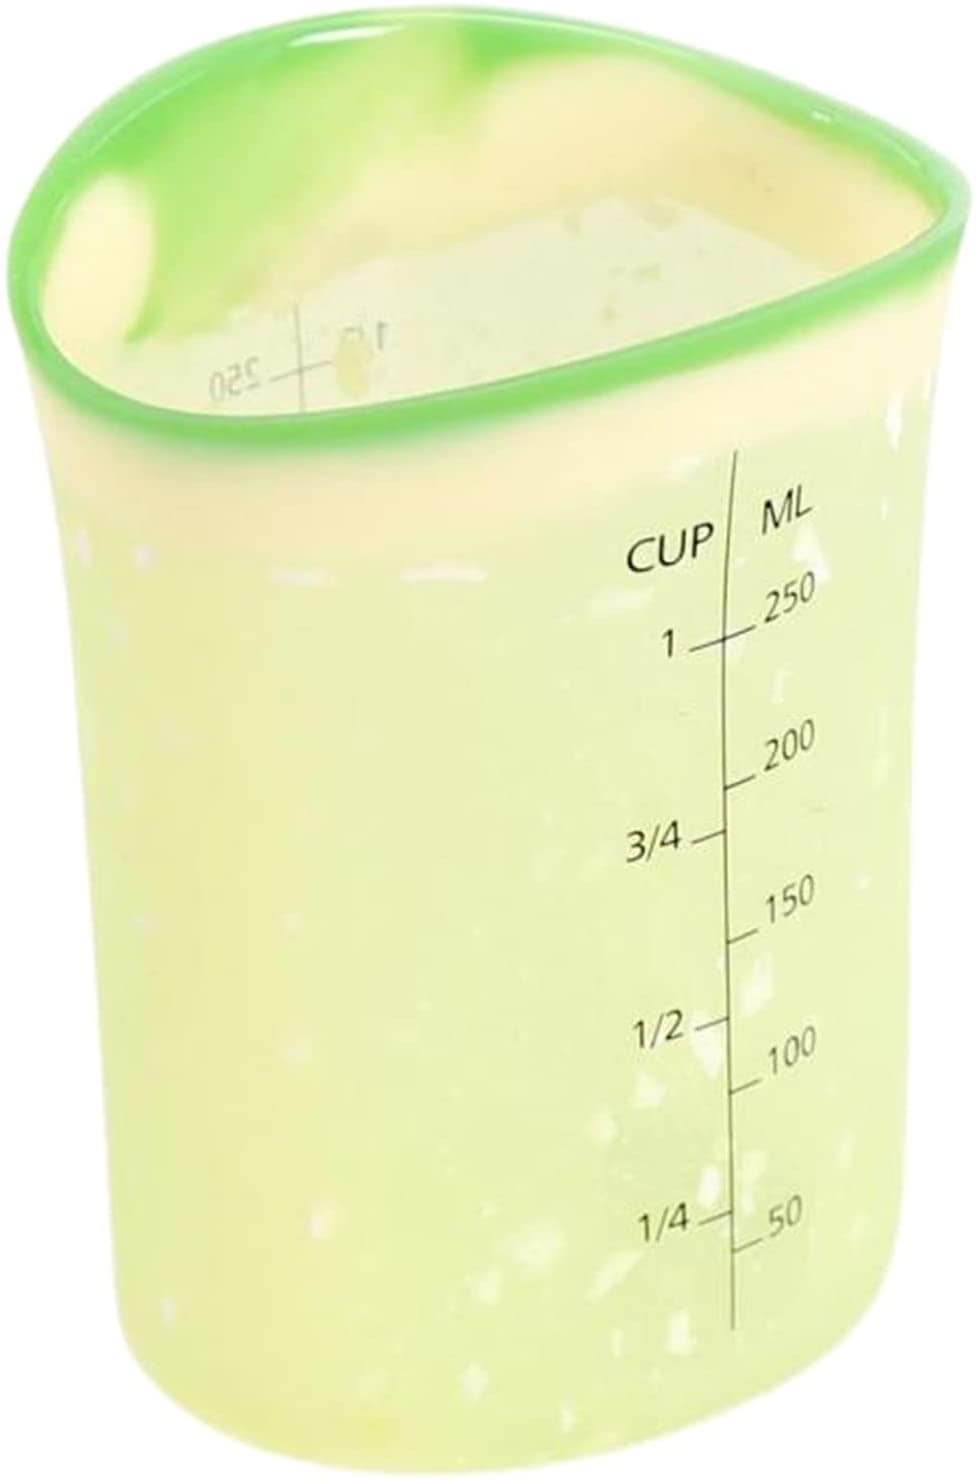 2 Cup Liquid Measuring Cup, Silicone